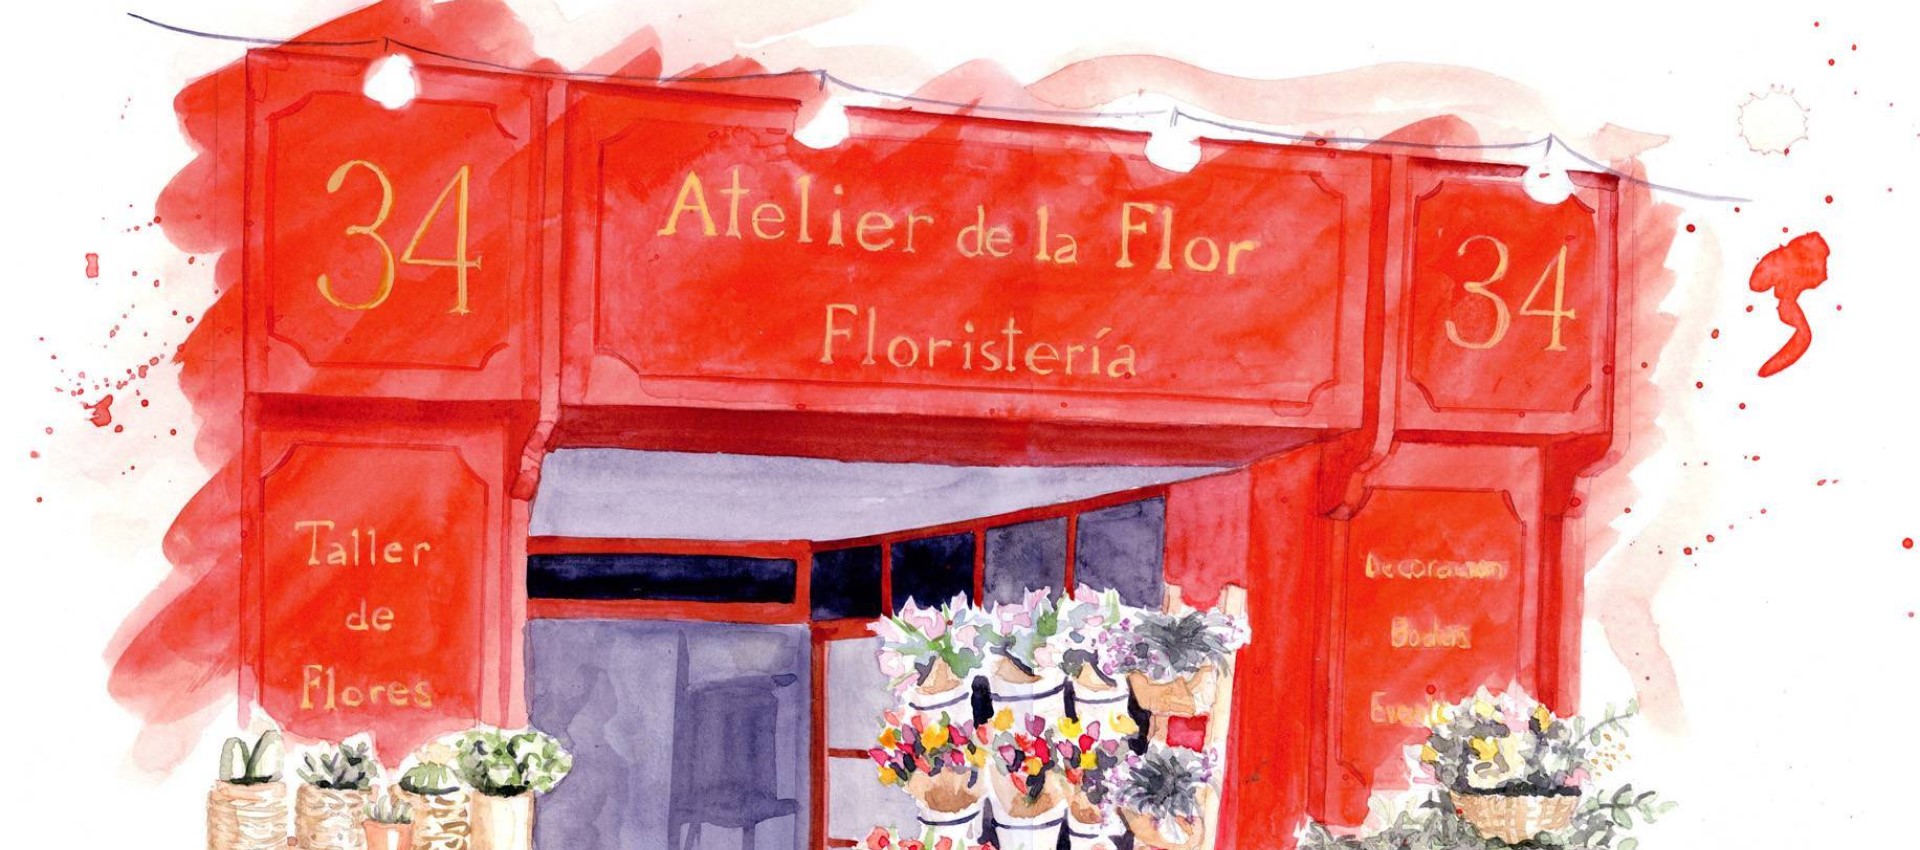 Atelier de la Flor, el espacio de venta de flores, talleres y decoración de eventos de mayor éxito en Valencia